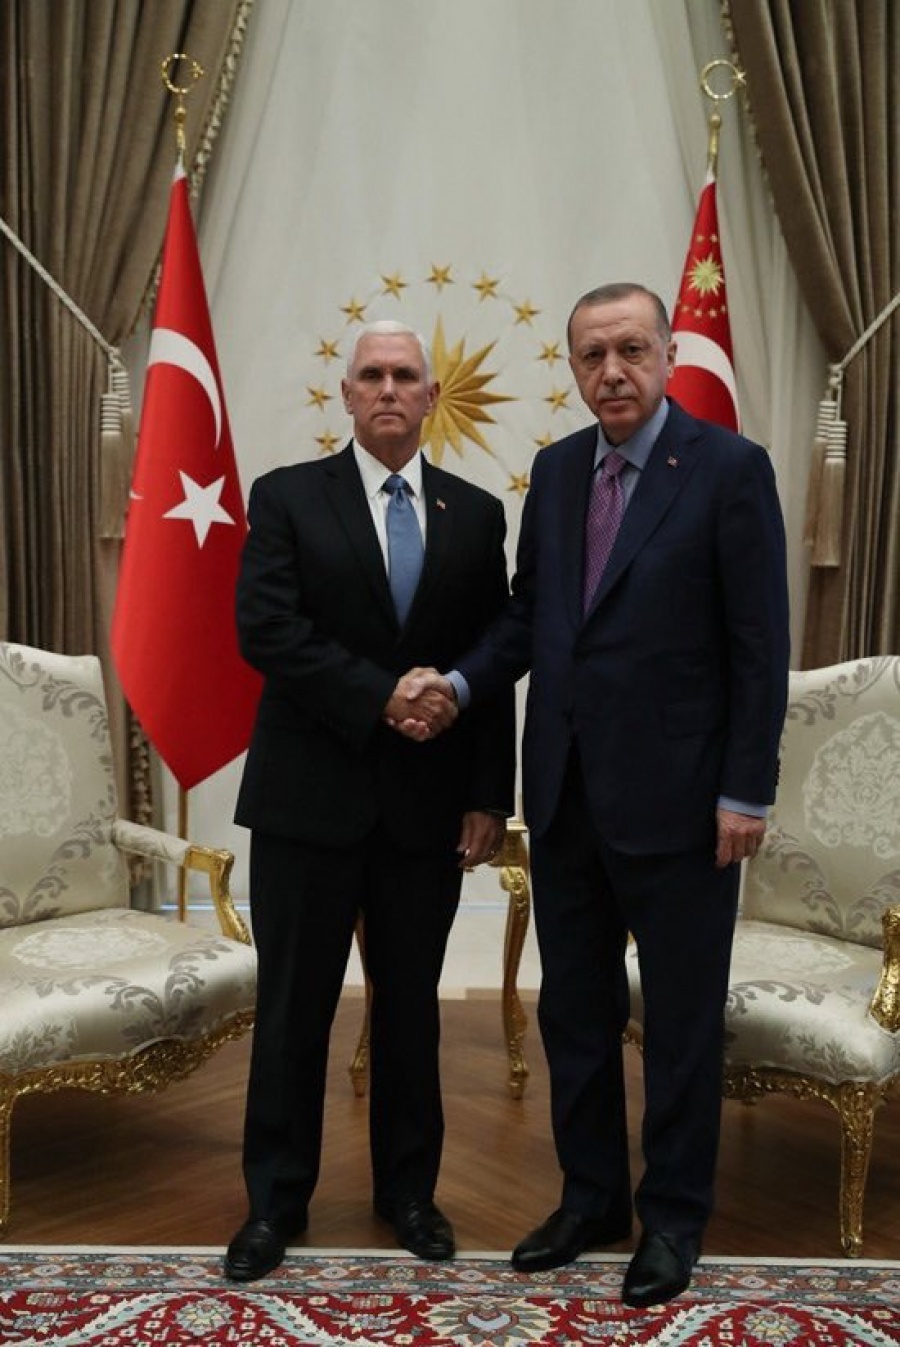 Σε ψυχροπολεμικό κλίμα η συνάντηση Erdogan με Pence (αντιπρόεδρος ΗΠΑ) και Pompeo (ΥΠΕΞ ΗΠΑ)